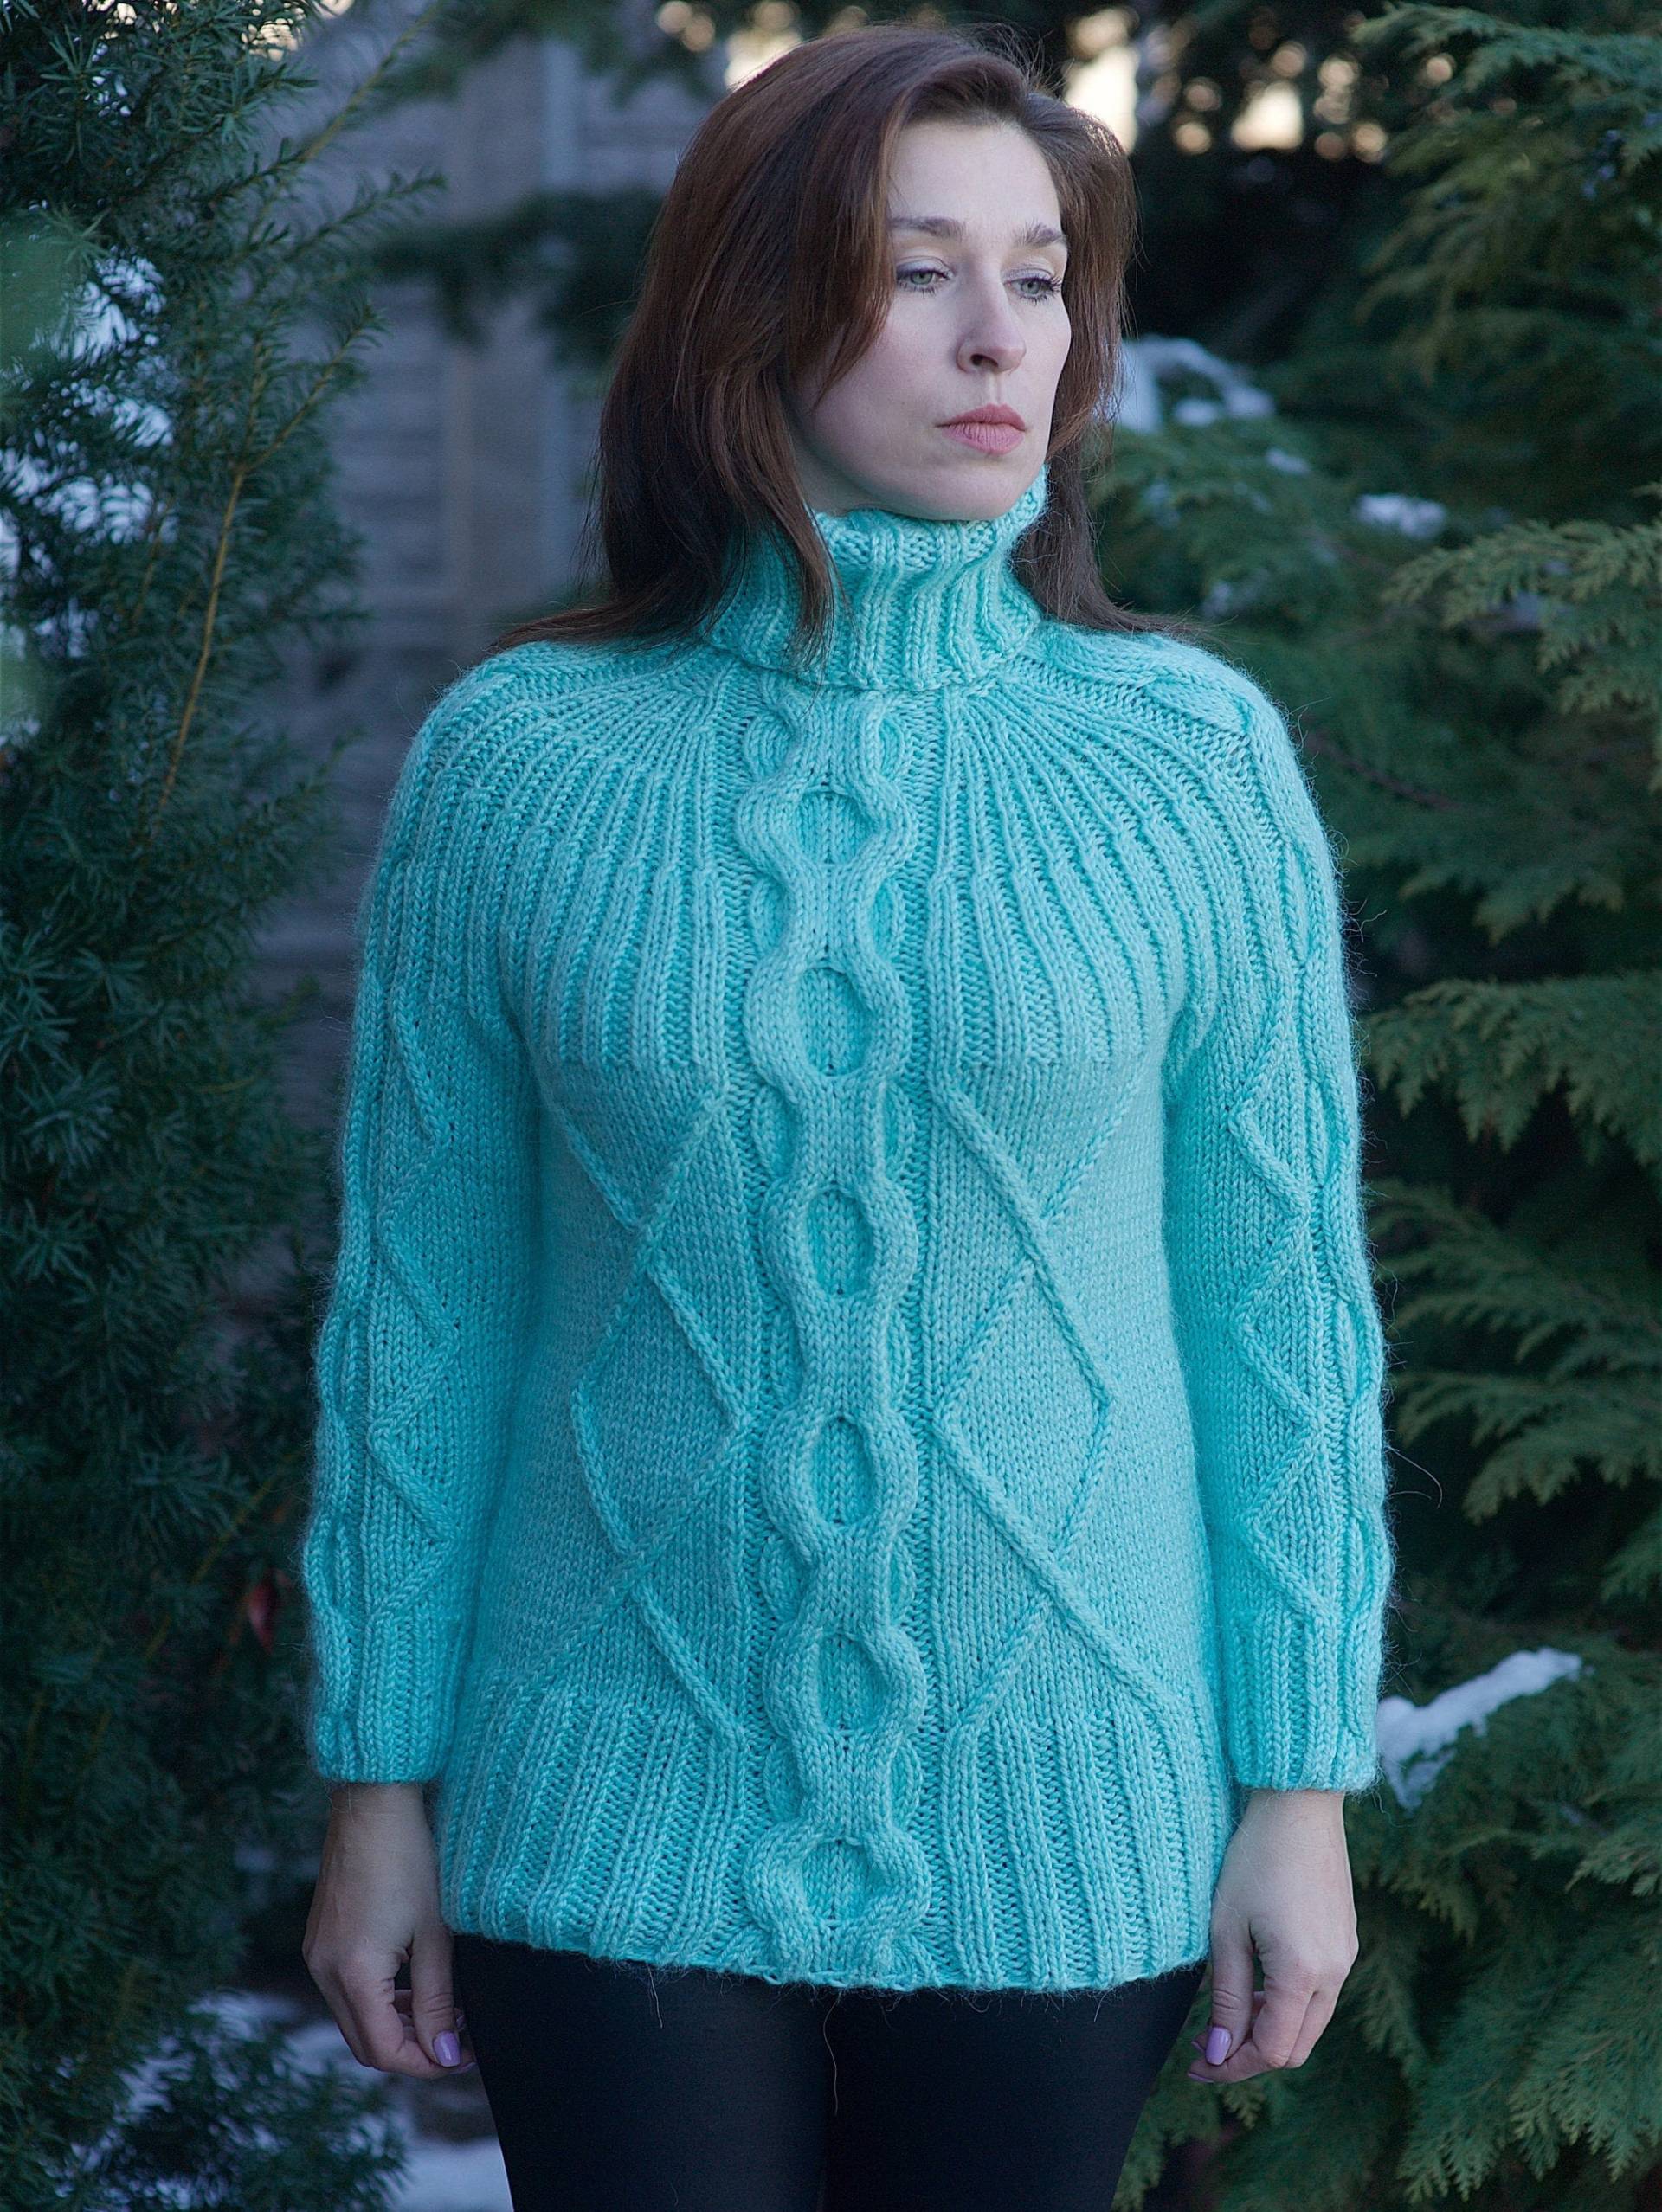 Damen Wollpullover Grün Strickwolle Alpaka Mode Warm Weich Casual Pullover von MagicclewByLesia